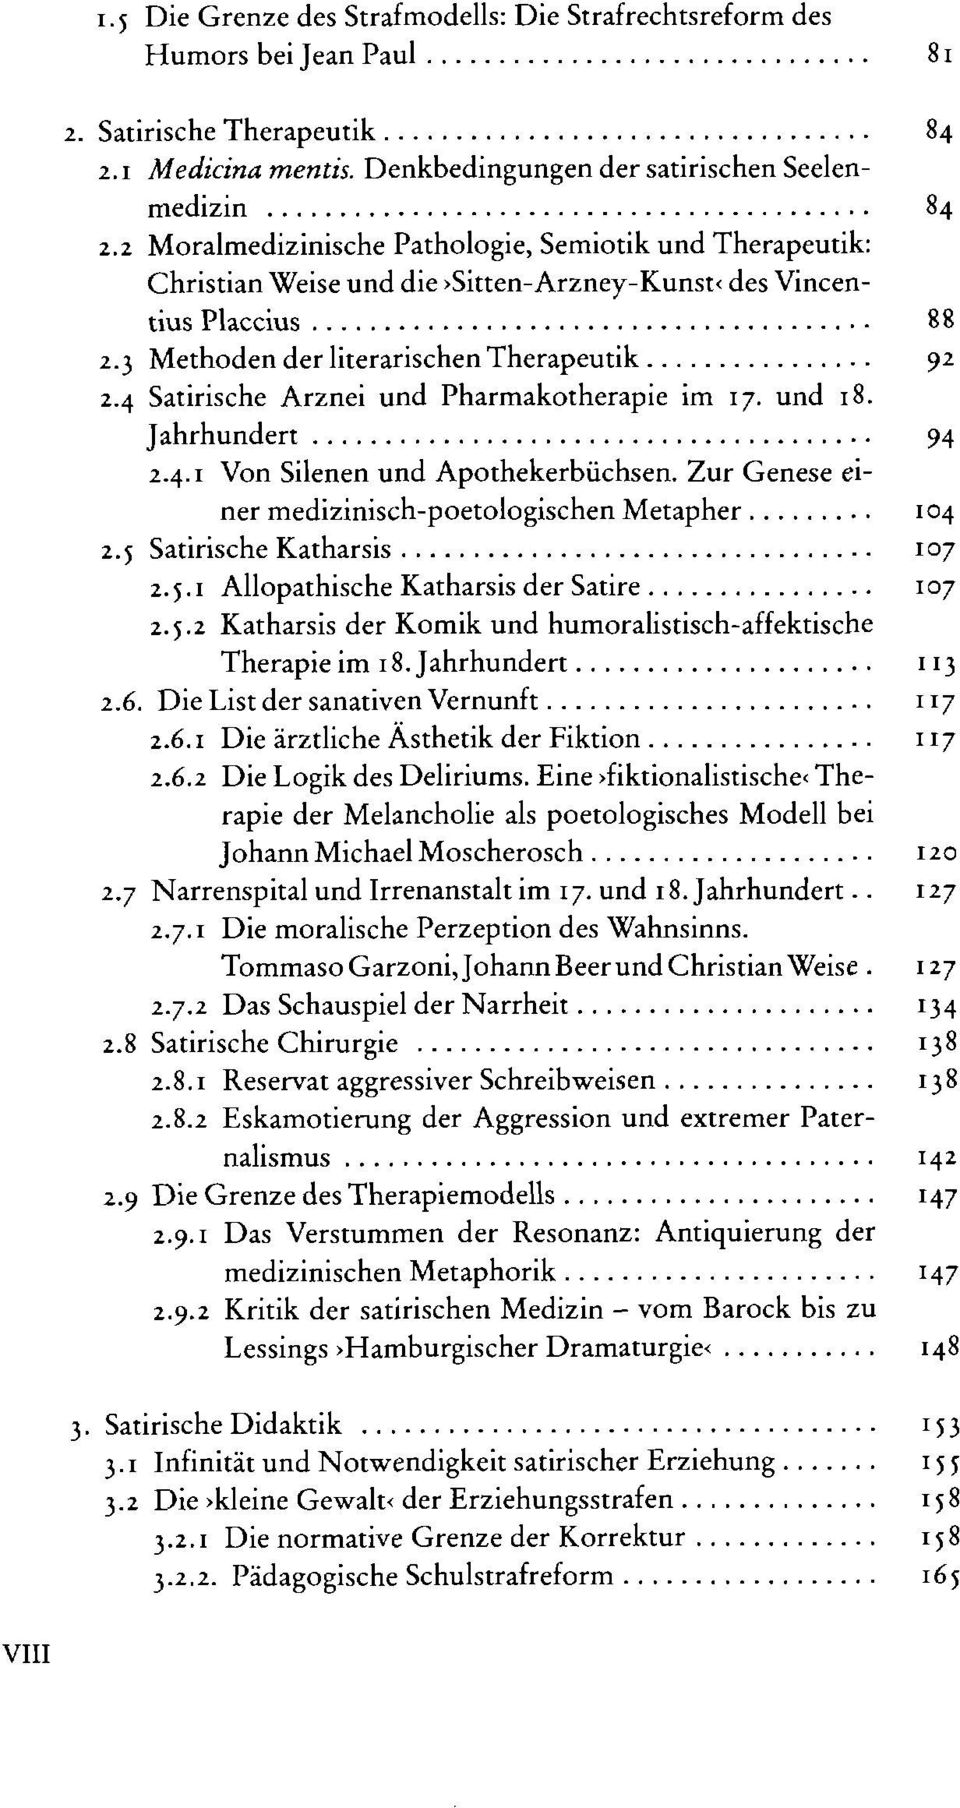 und 18. Jahrhundert... 2.4.1 Von Silenen und Apothekerbüchsen. Zur Genese einer medizinisch-poetologischen Metapher... 2.1 Satirische Katharsis... 2.5.